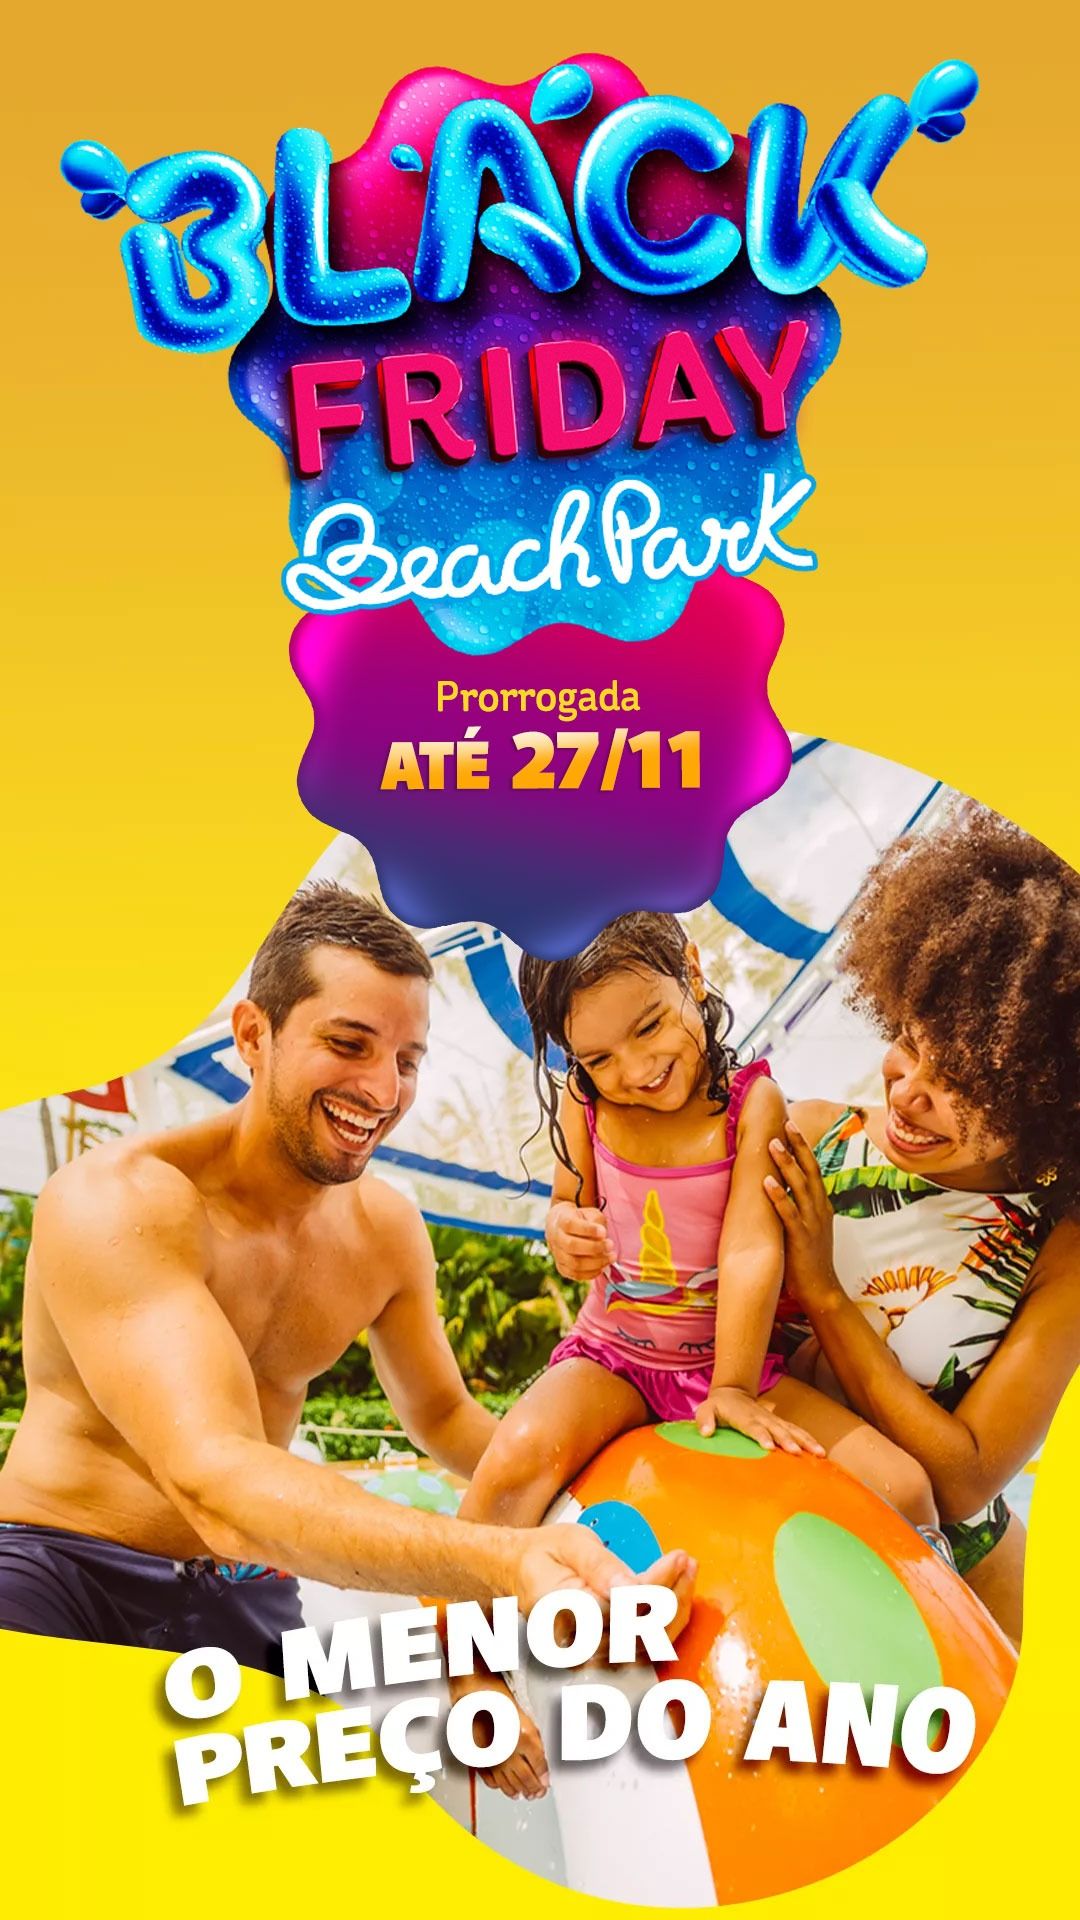 Black Friday Beach Park  Garanta já o MENOR PREÇO DO ANO!